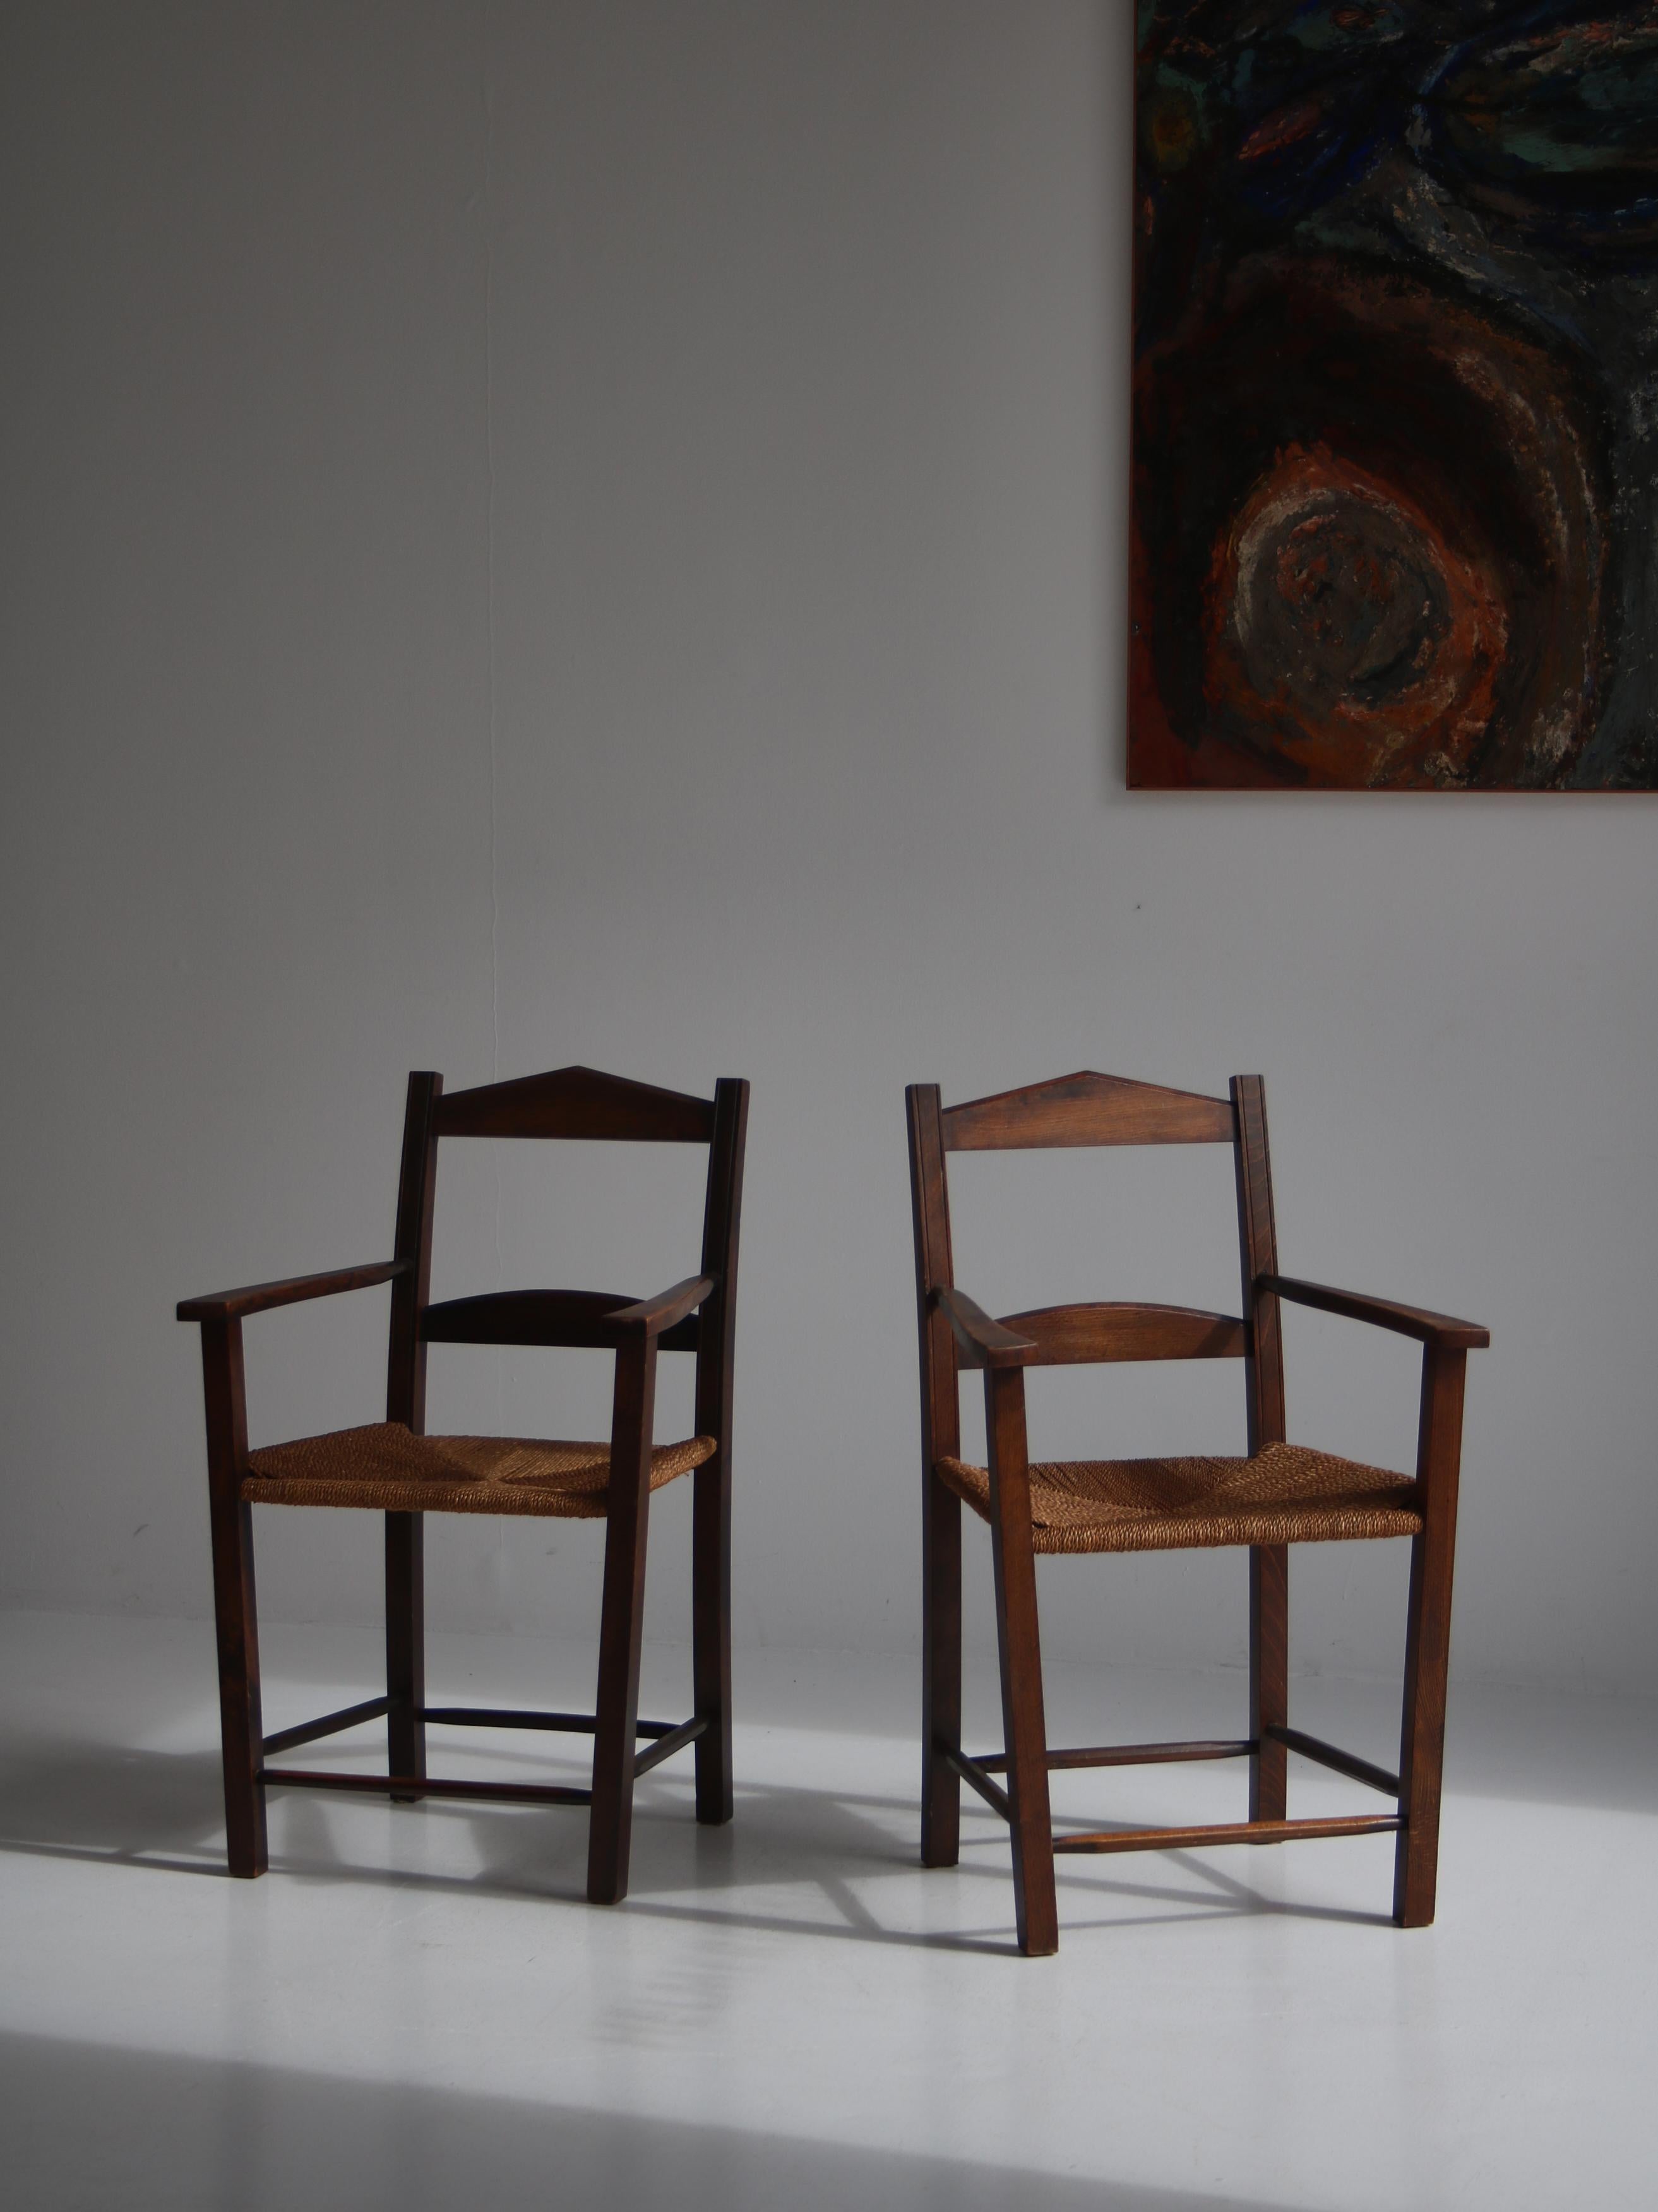 Charmante paire de fauteuils en bois de pin teinté foncé avec des sièges en gazon tissé. Les chaises ont été fabriquées au Danemark dans les années 1930-40 et n'ont jamais été restaurées. Le design est simpliste mais élégant et la patine est tout